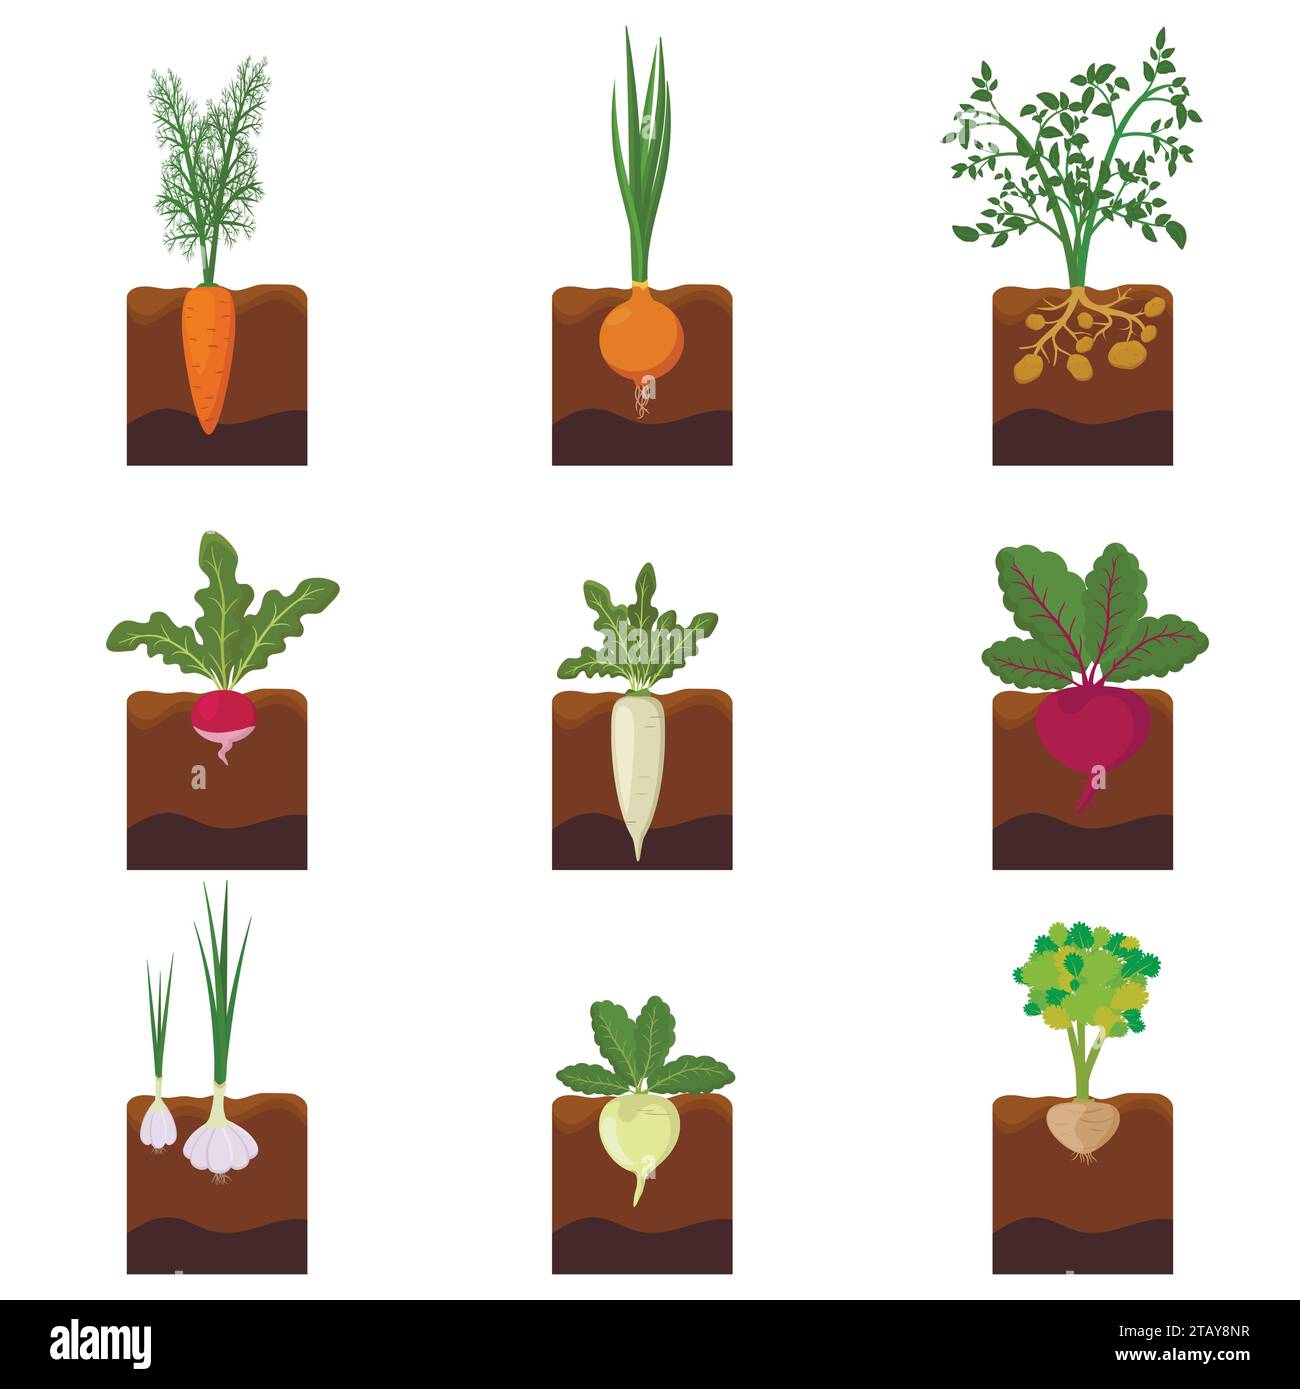 Ensemble de plantes de légumes différents poussant sous terre - carotte, oignon, pommes de terre, radis, daikon, betterave, ail, céleri. Légumes de culture de racines plantés Illustration de Vecteur